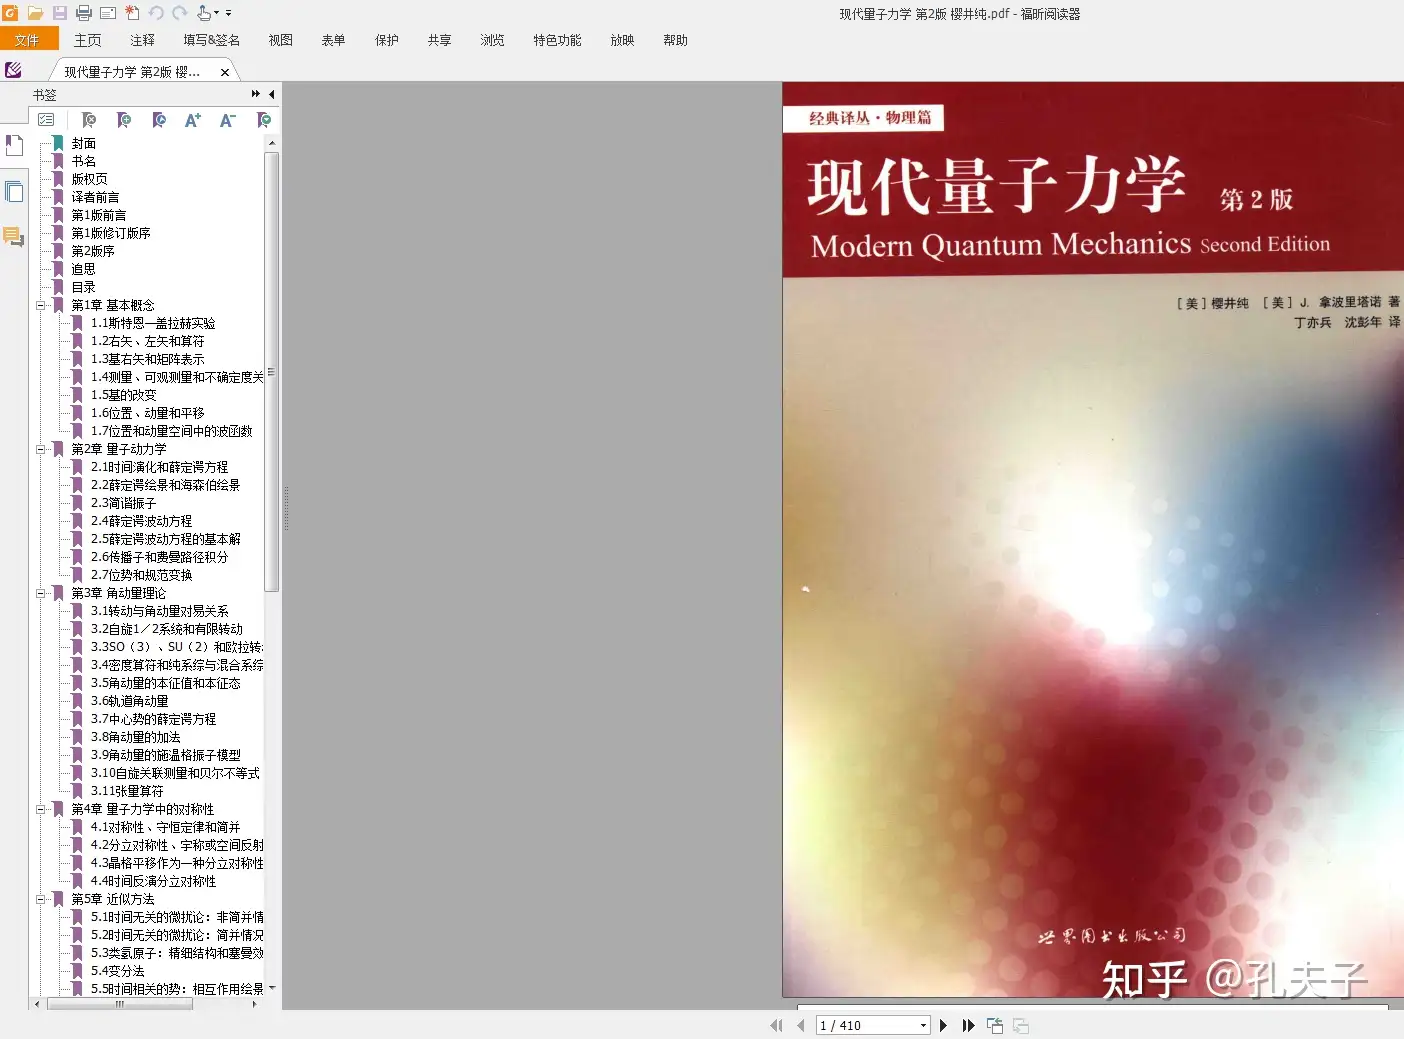 现代量子力学(第2版)樱井纯.pdf - 知乎